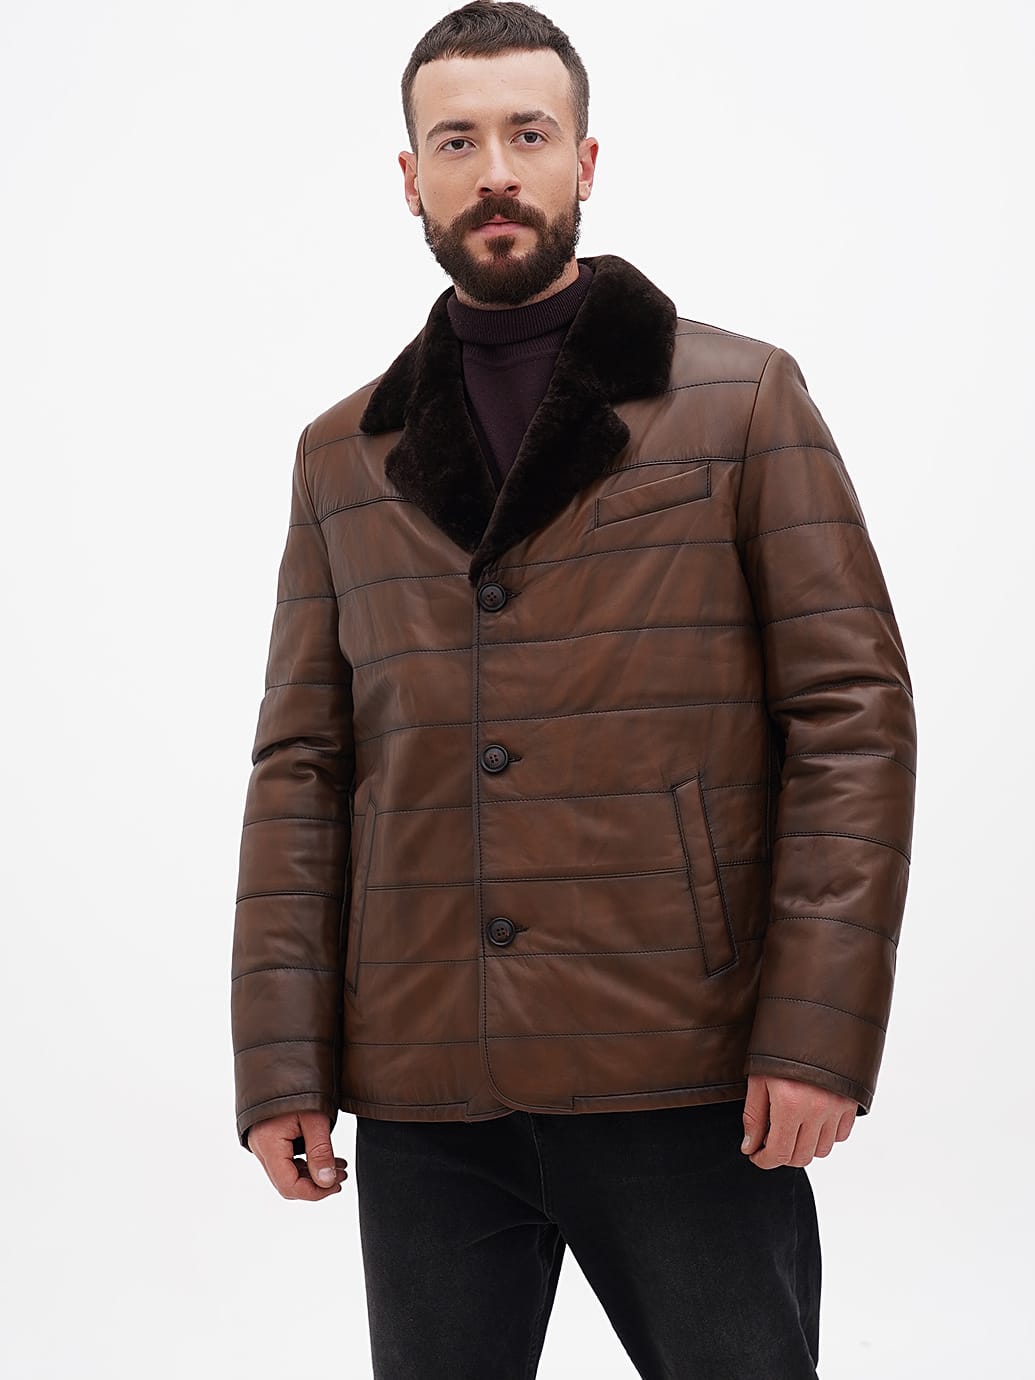 Мужские куртки | Купить верхнюю одежду для мужчин по оптимальной цене | Интернет-магазин OLYMP